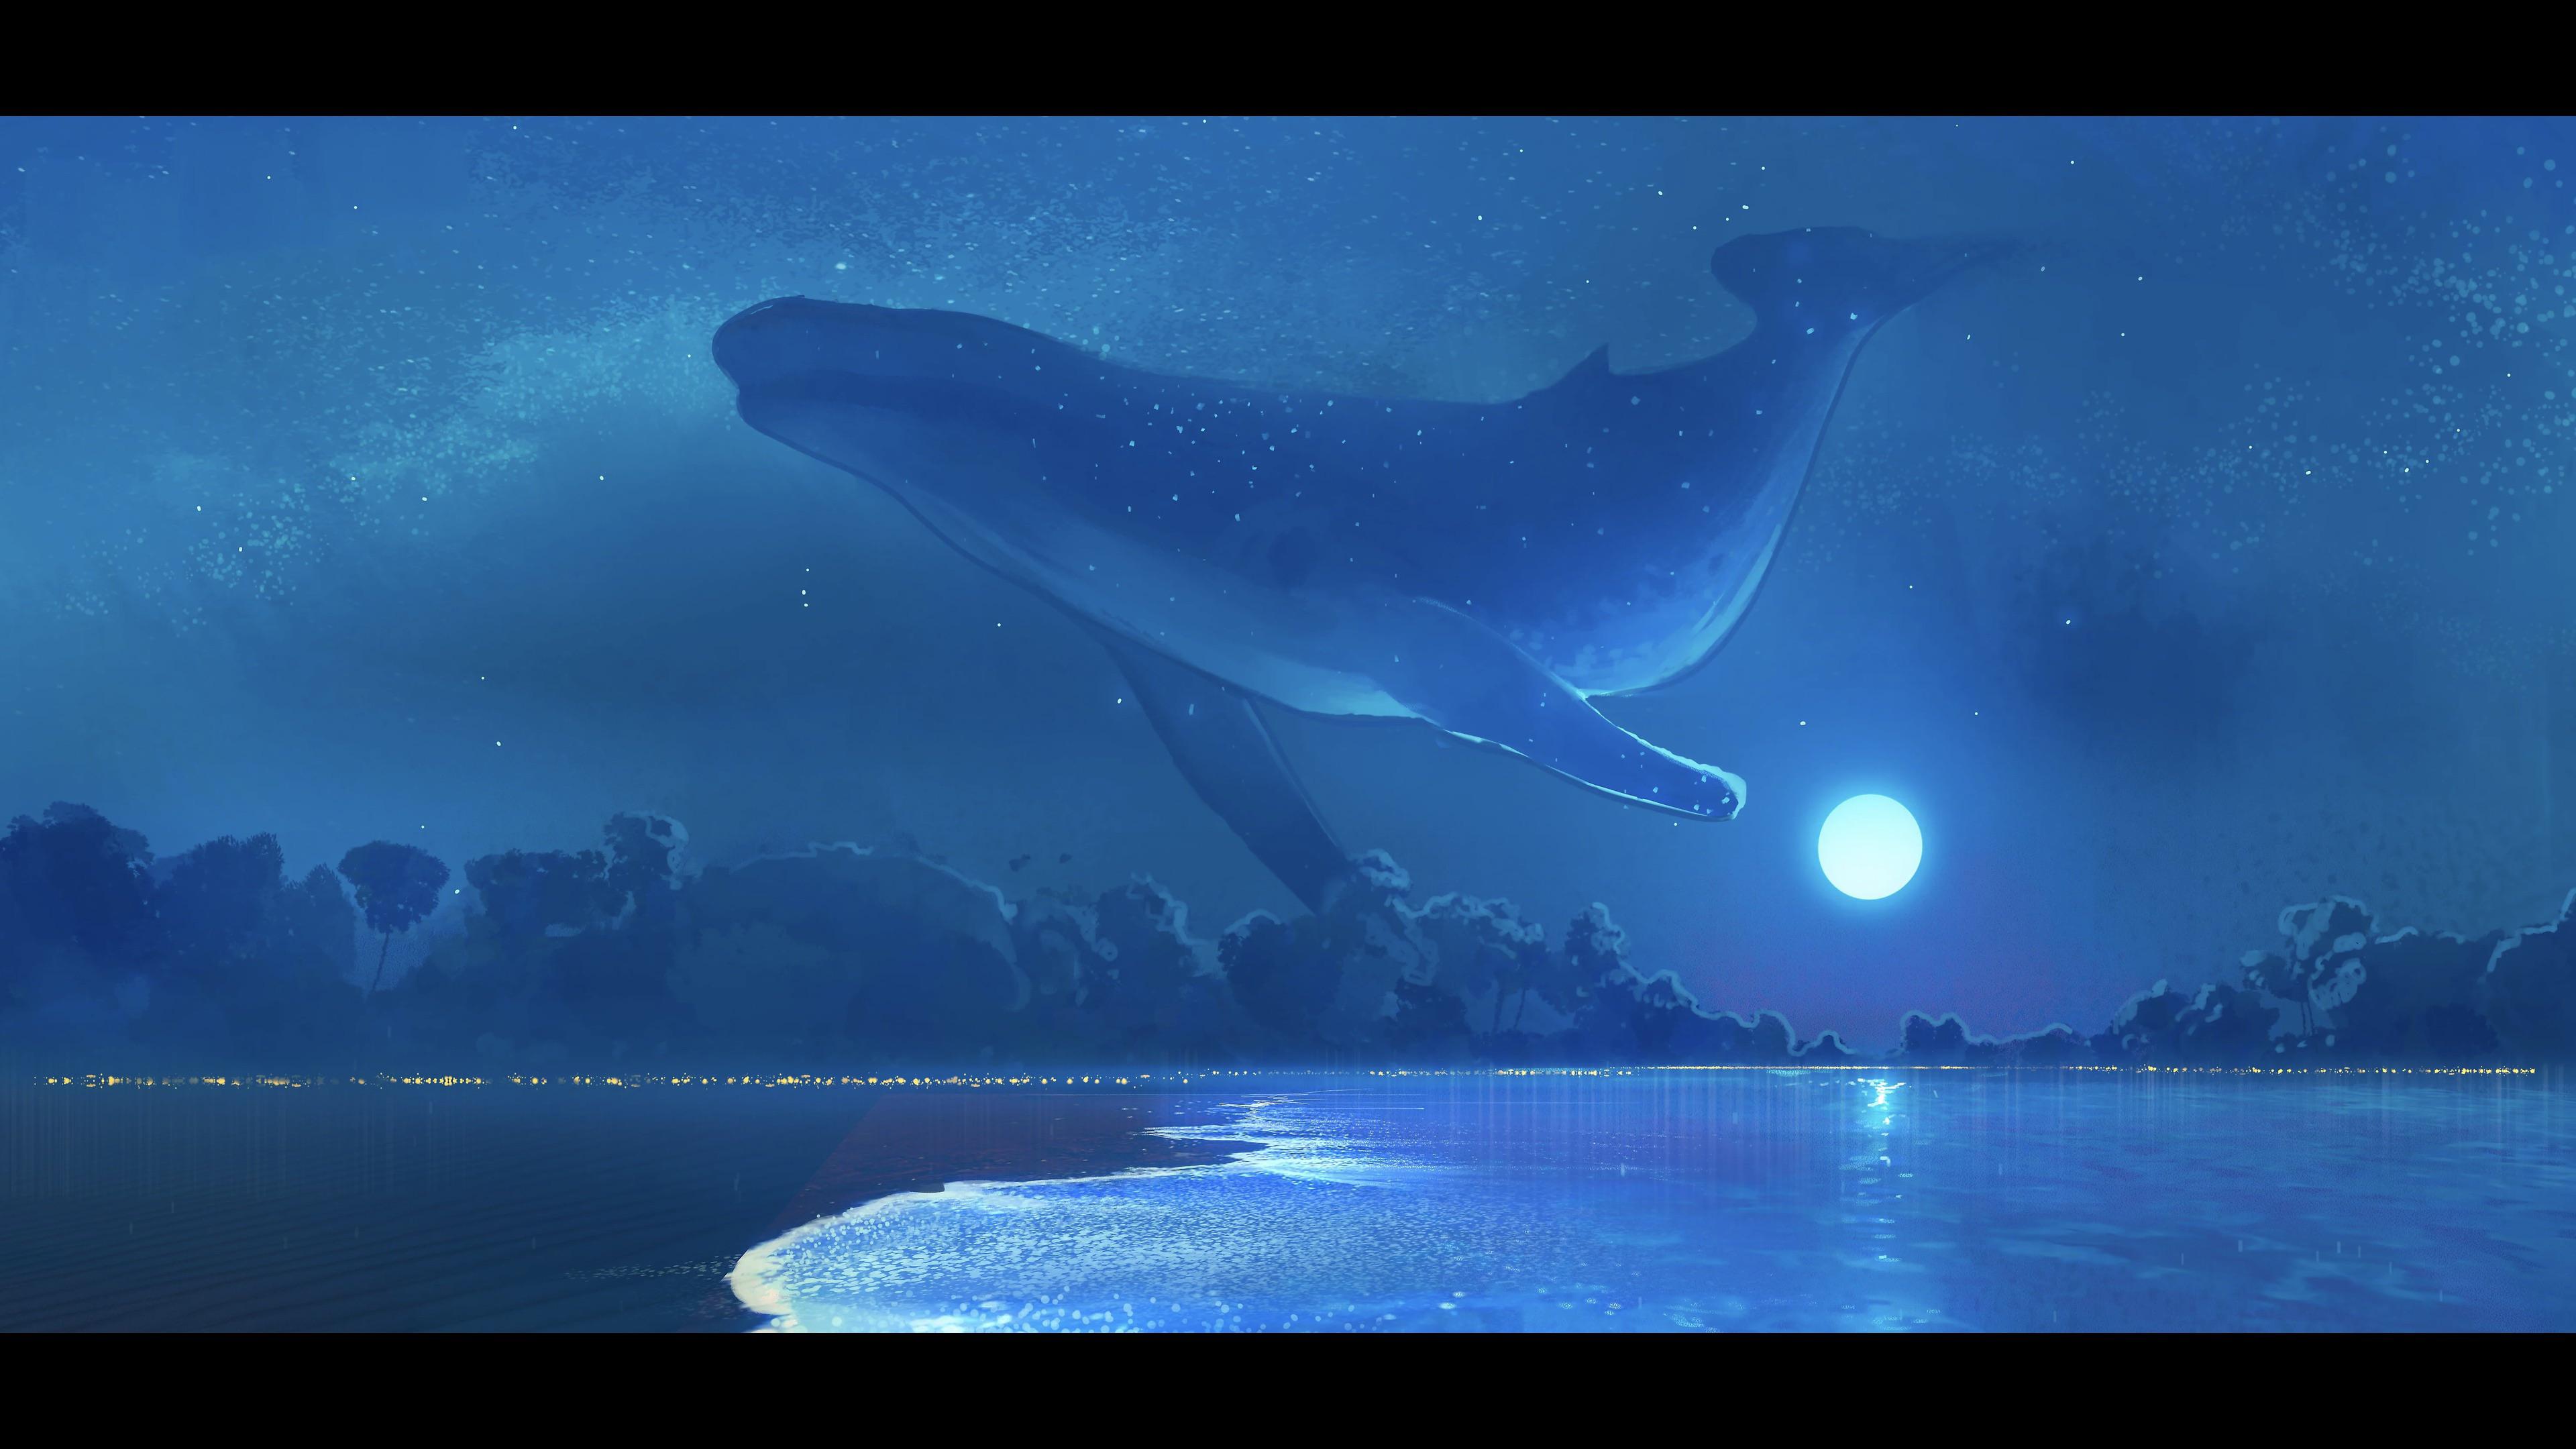 Fantasy Whale 4k Ultra HD Wallpaper by BossLogic